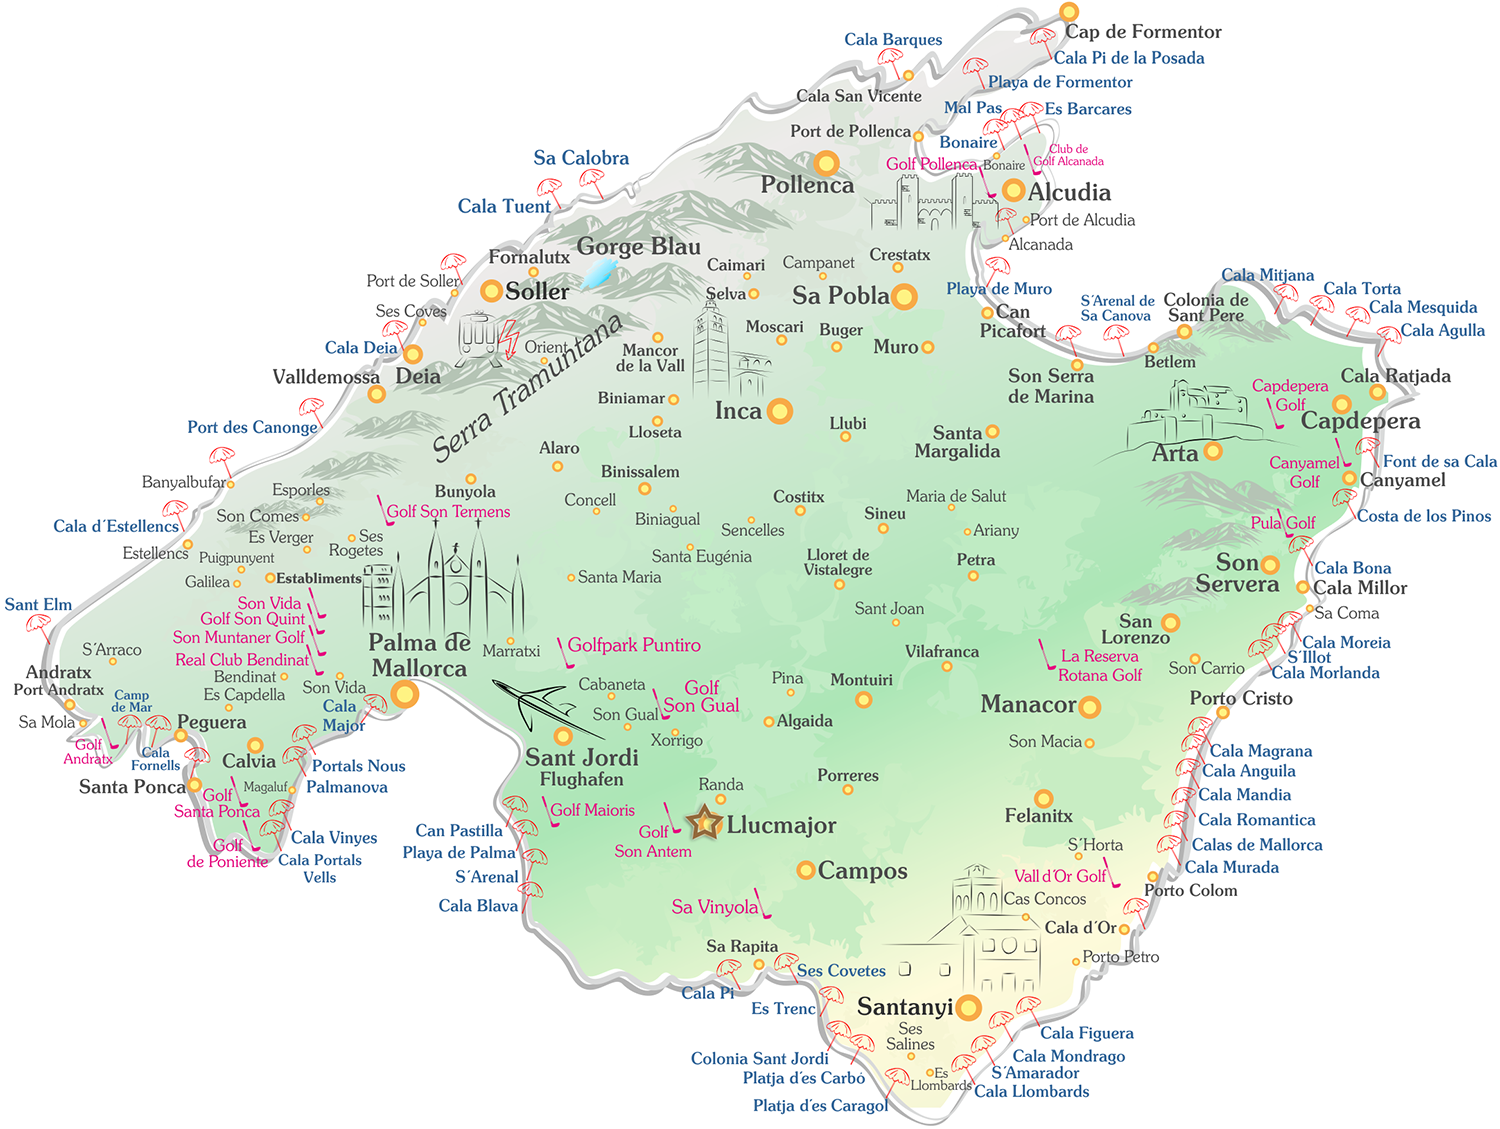 Llucmajor auf der Mallorca Karte